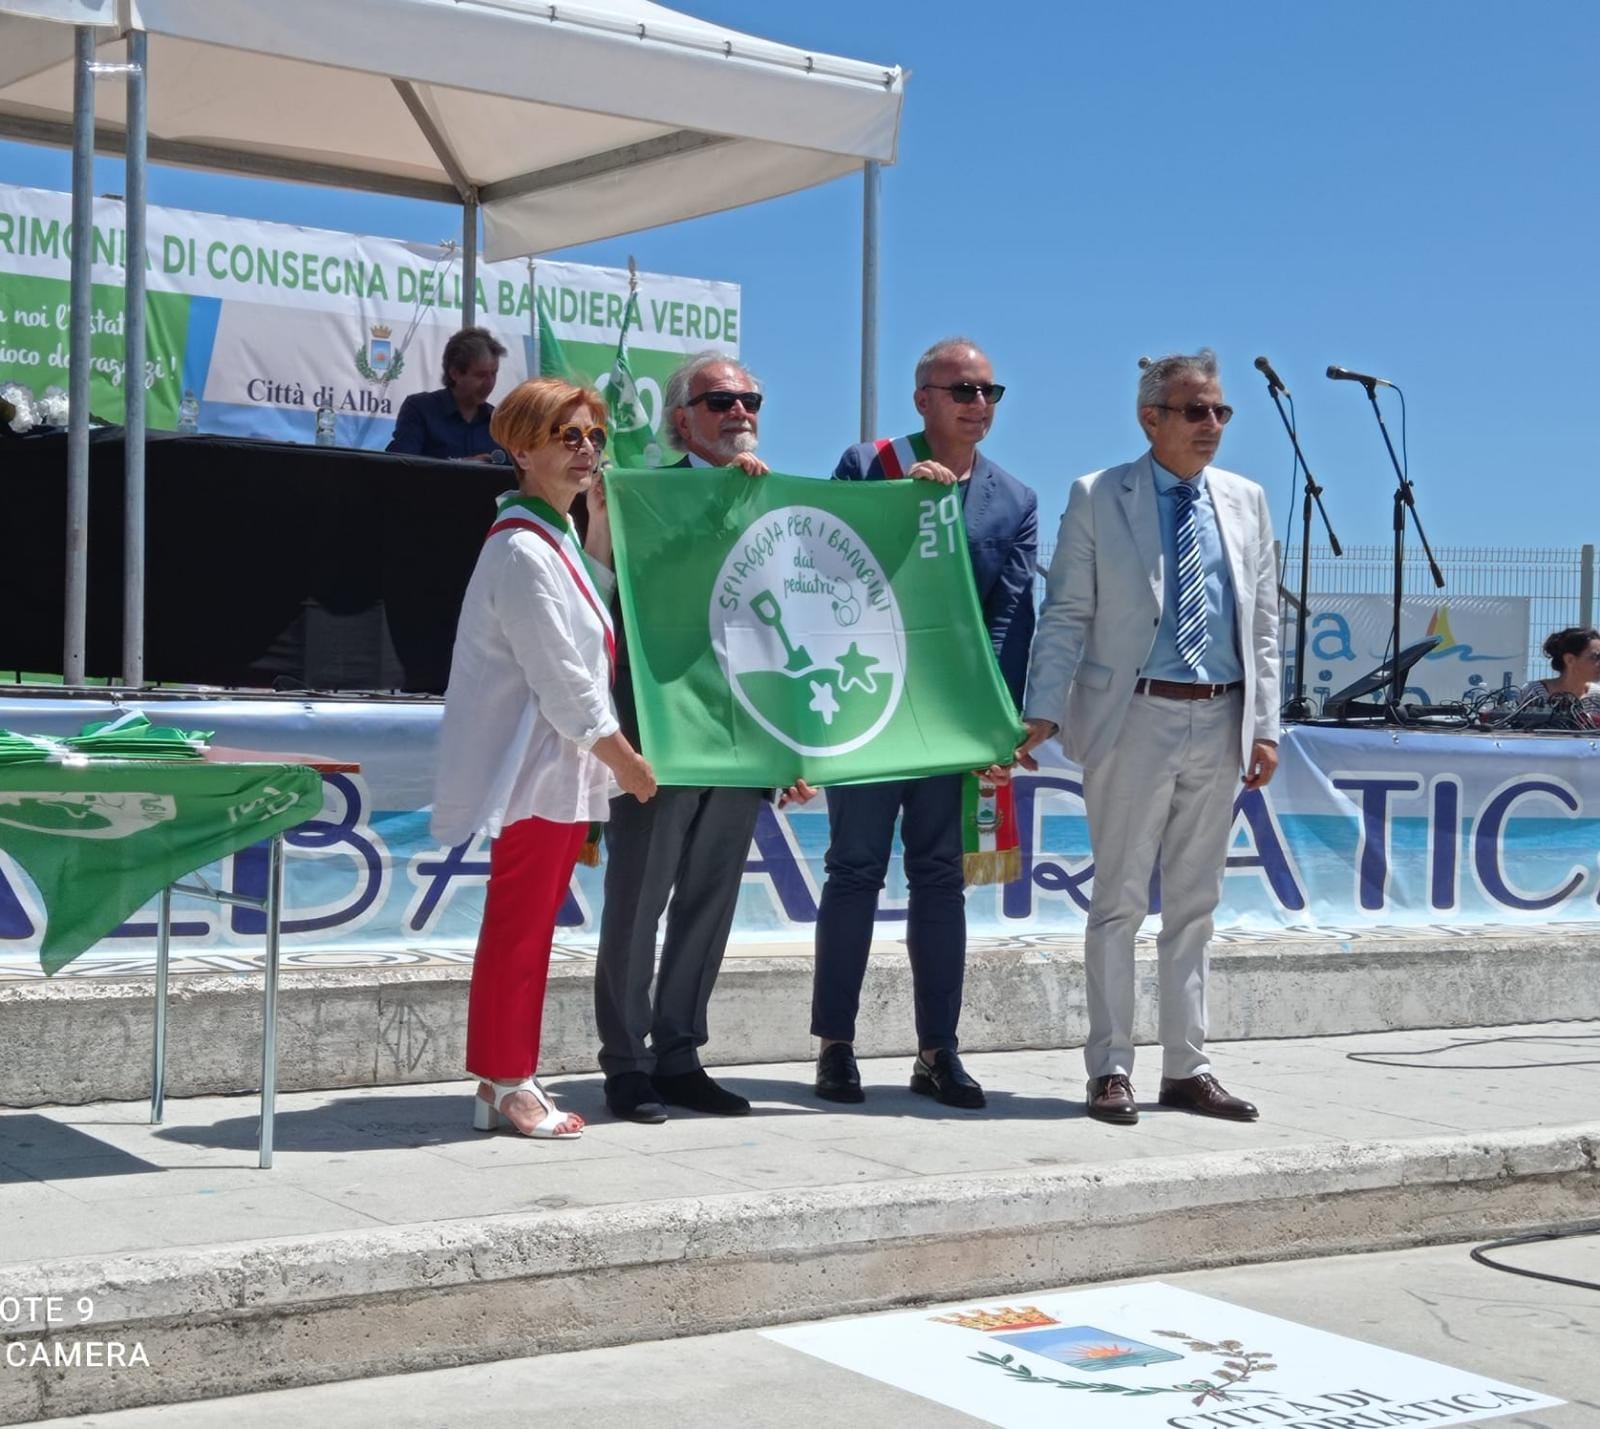 La FIAB assegna la Bandiera verde a Pineto per la sesta volta consecutiva